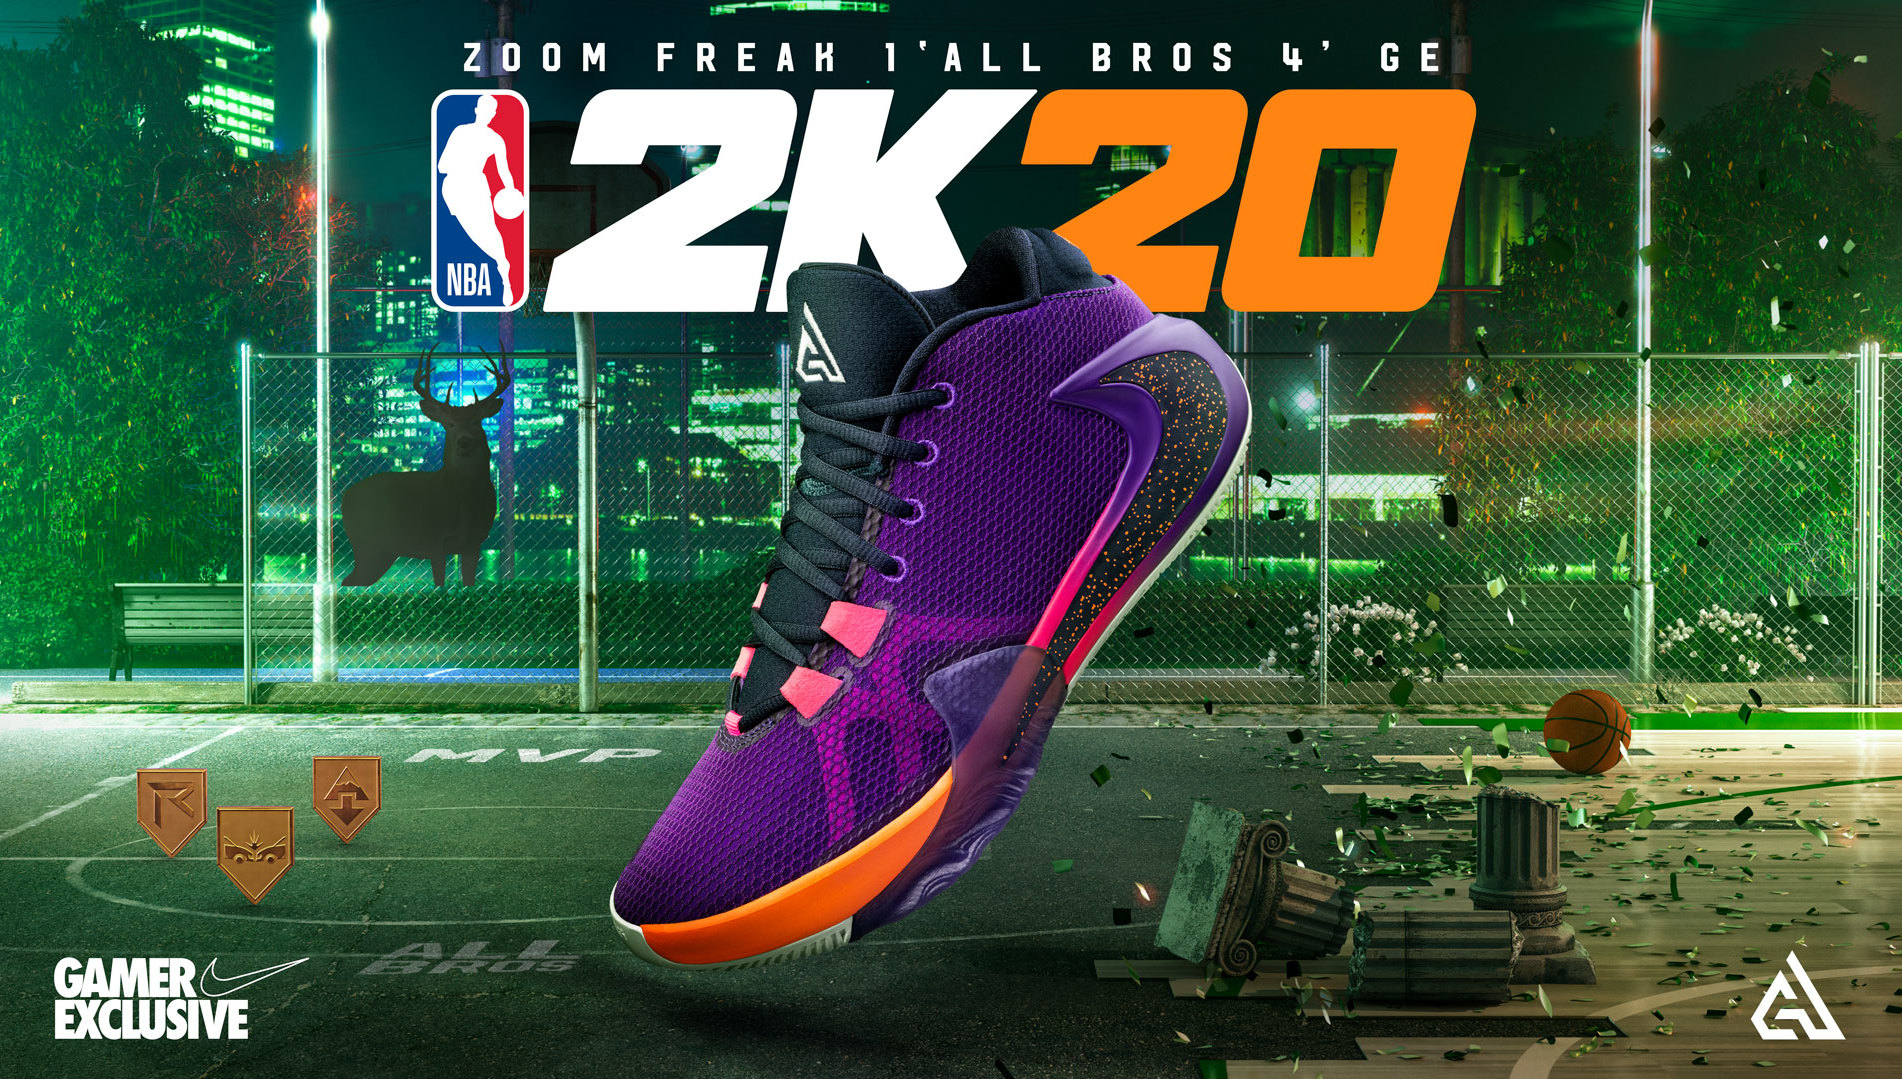 Veraangenamen Versnel Schurend You Can Only Get This Nike Zoom Freak 1 by Playing NBA 2K20 | Complex